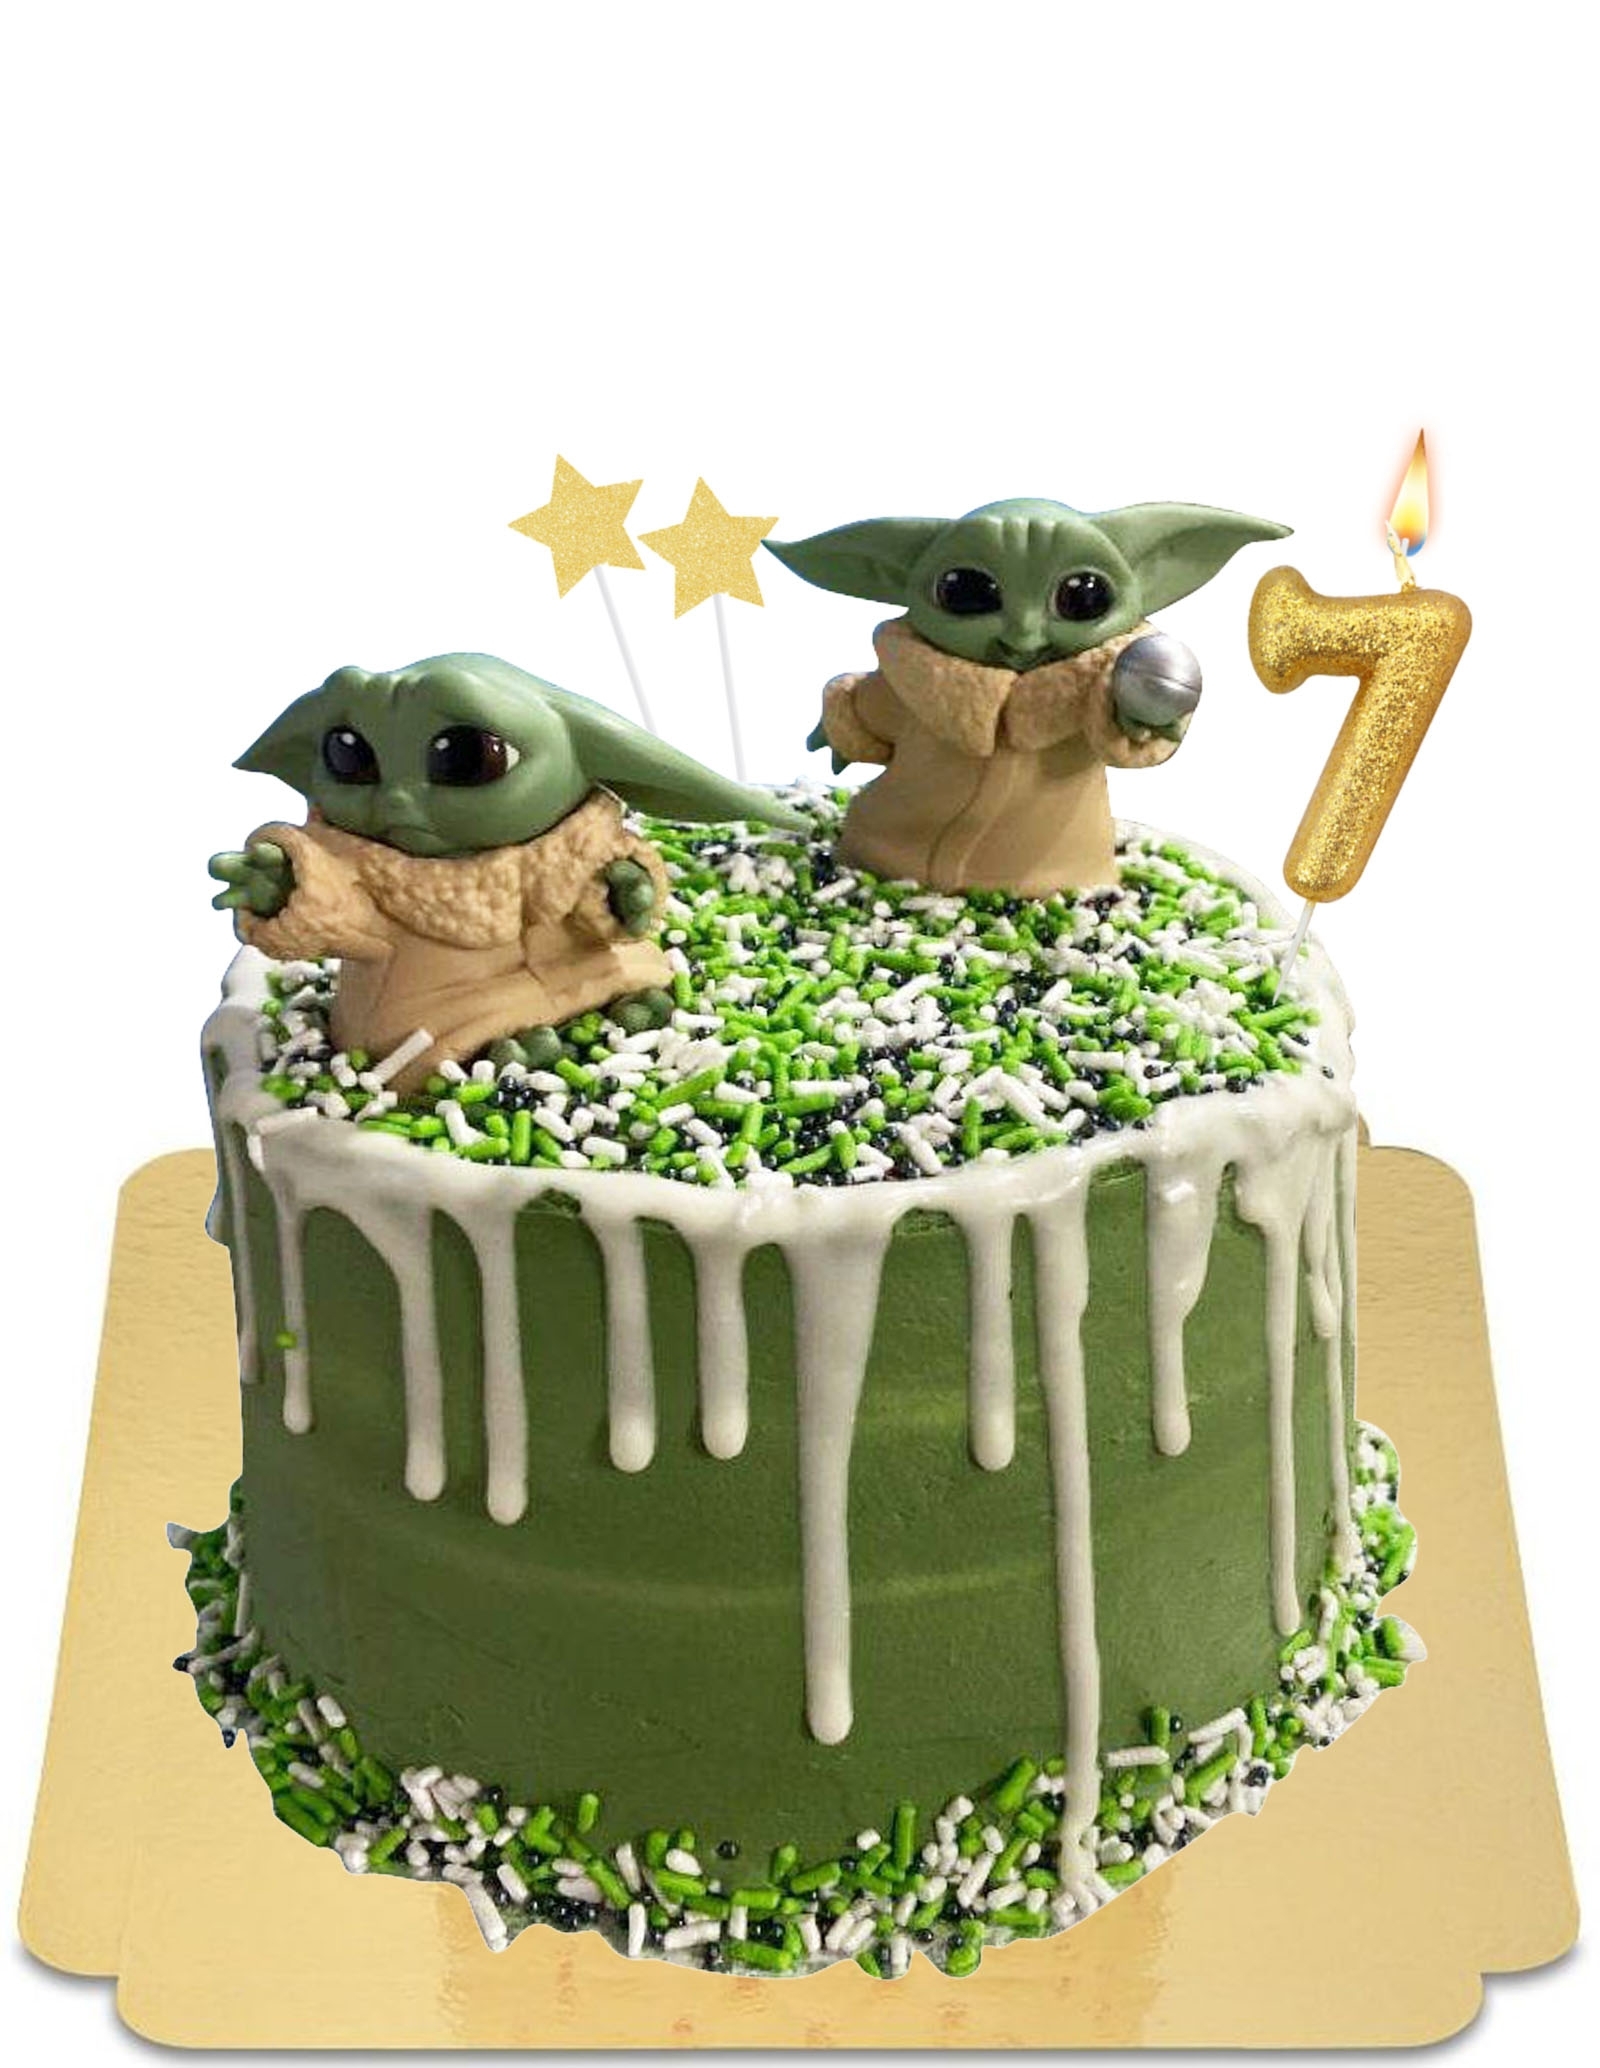 Grüner Baby Yoda Drip Cake mit veganen Baisers, glutenfrei